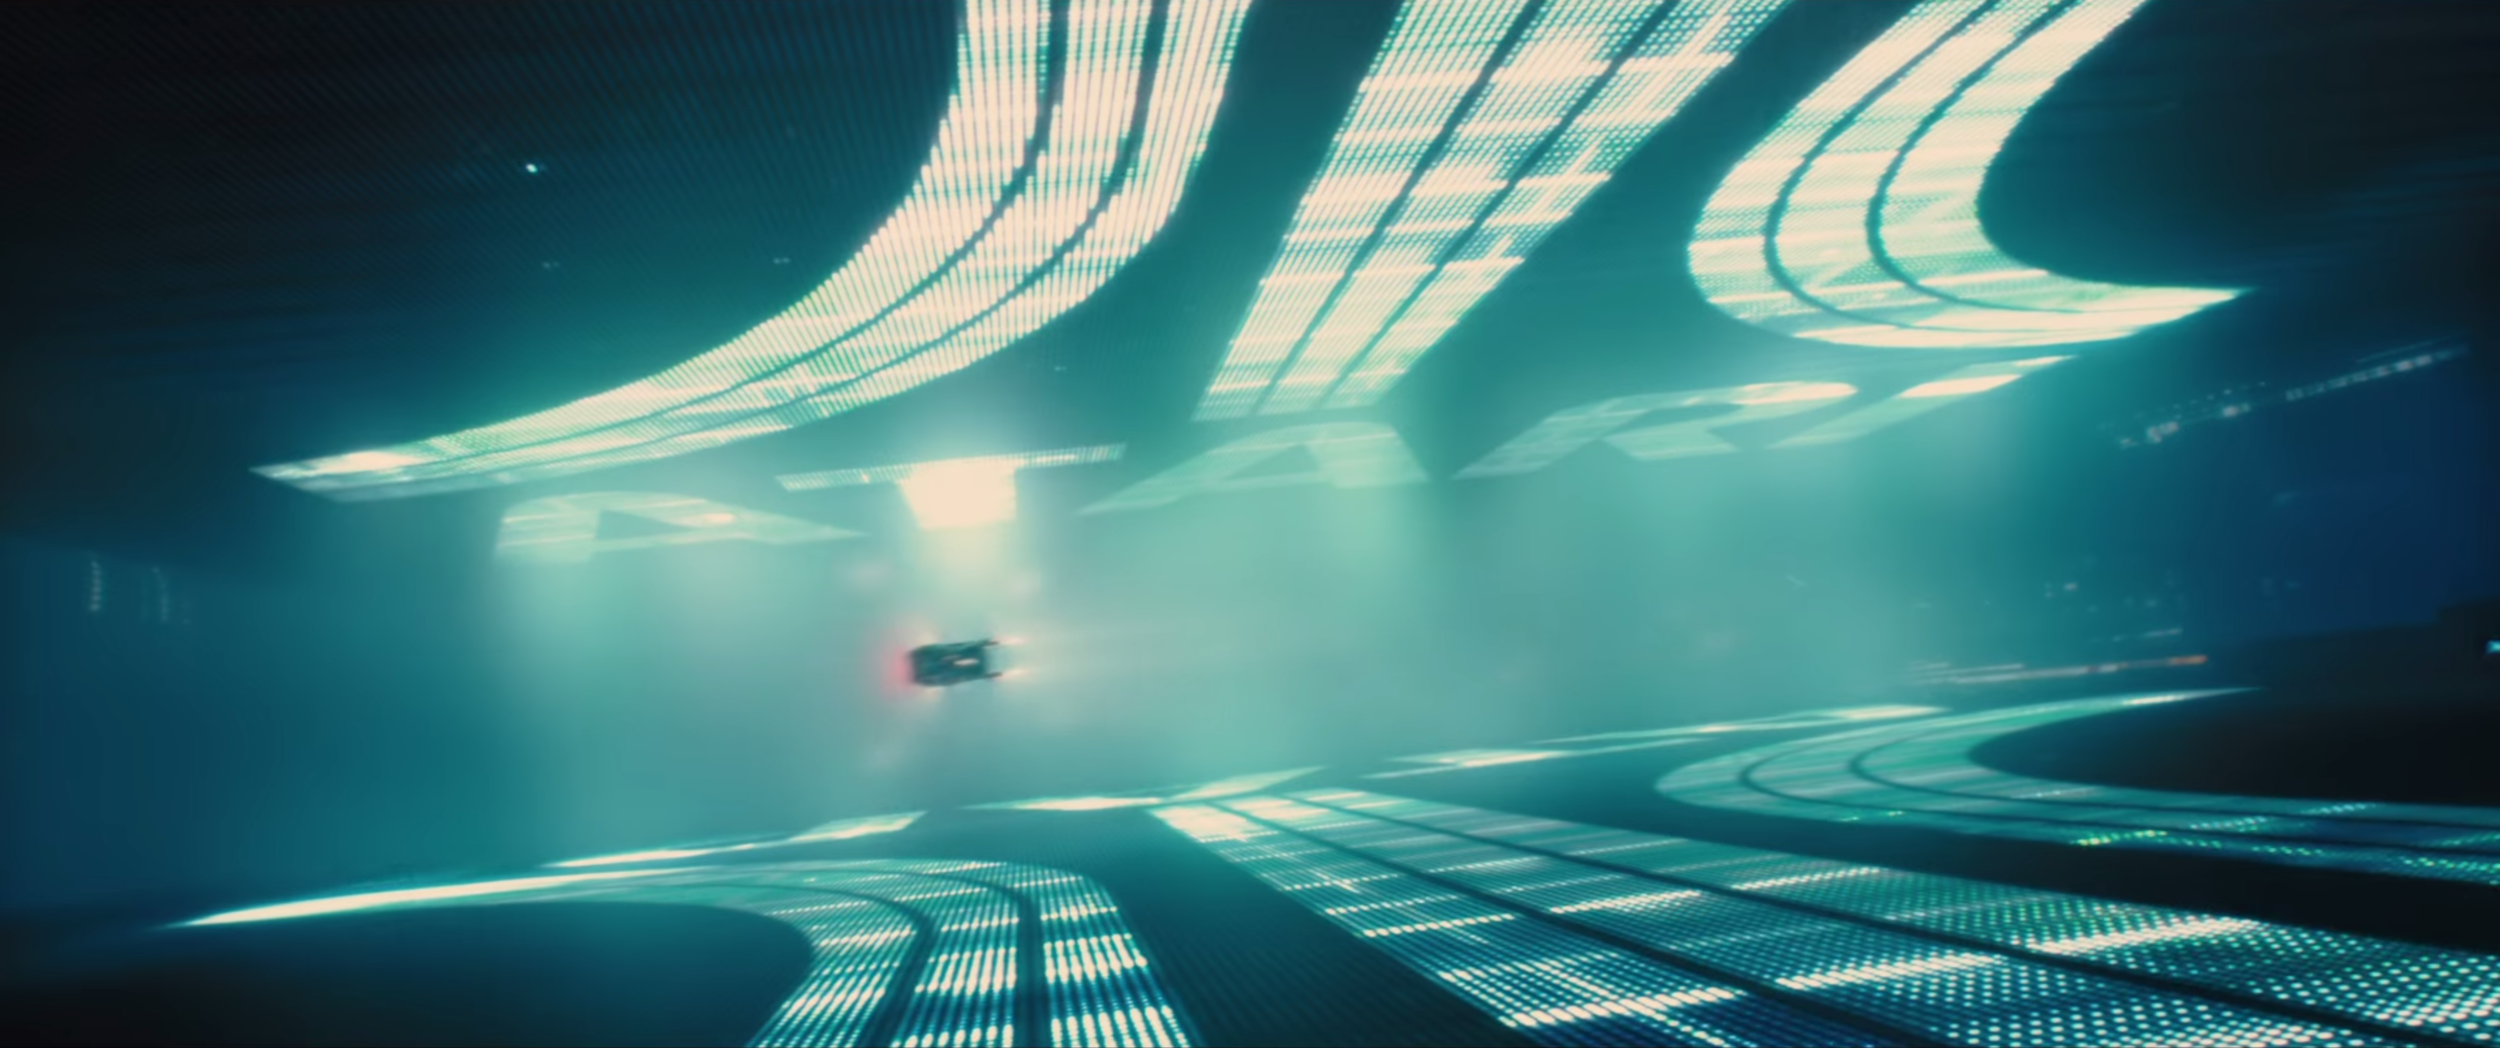 Blade-Runner-2049-Atari-Logo-Trailer-Awesome.png